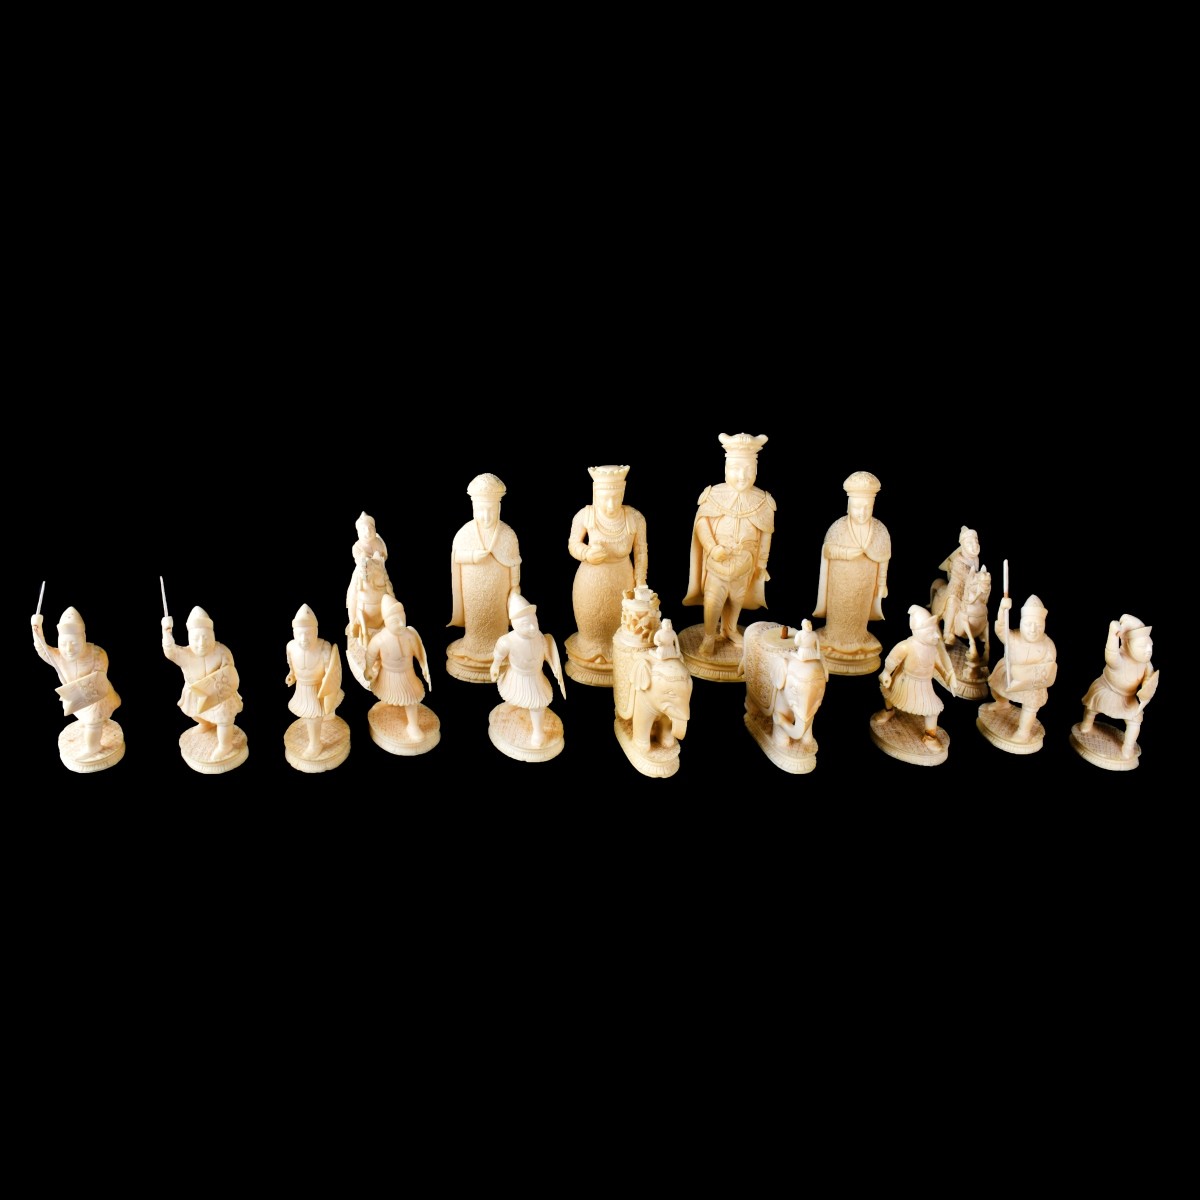 19th Century Chinese Export Chess Set